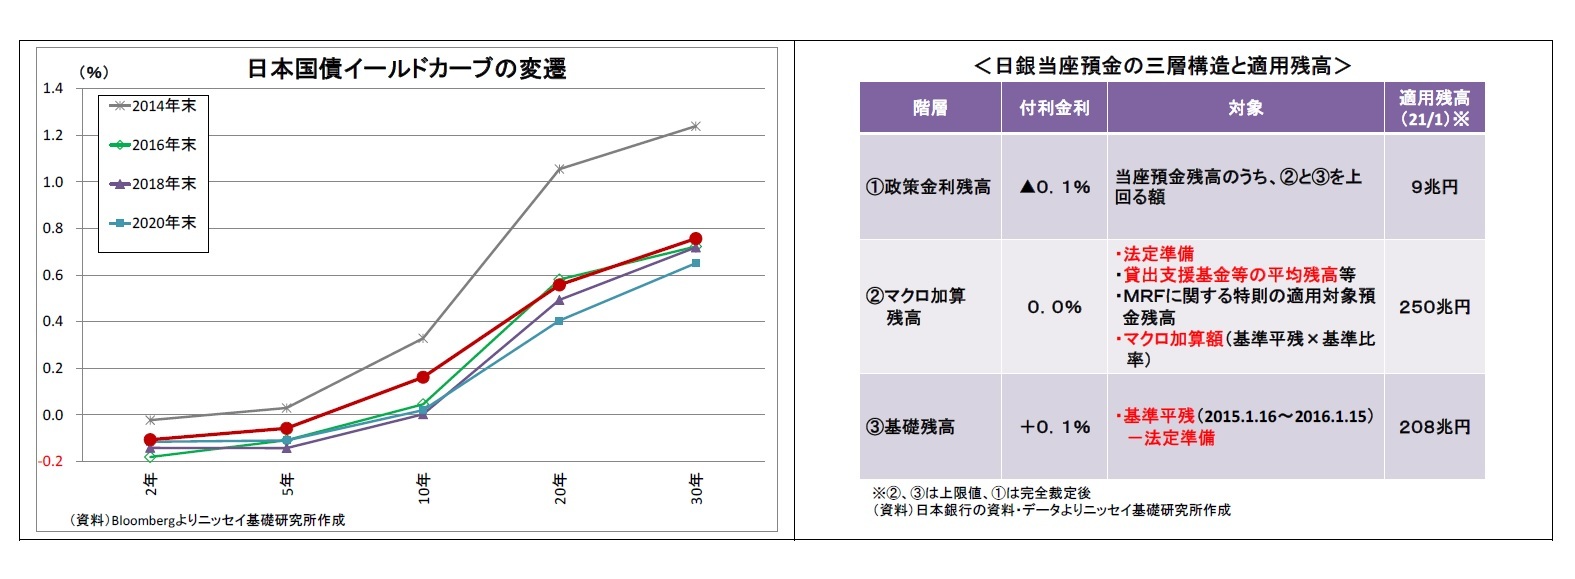 日本国債イールドカーブの変遷/＜日銀当座預金の三層構造と適用残高＞